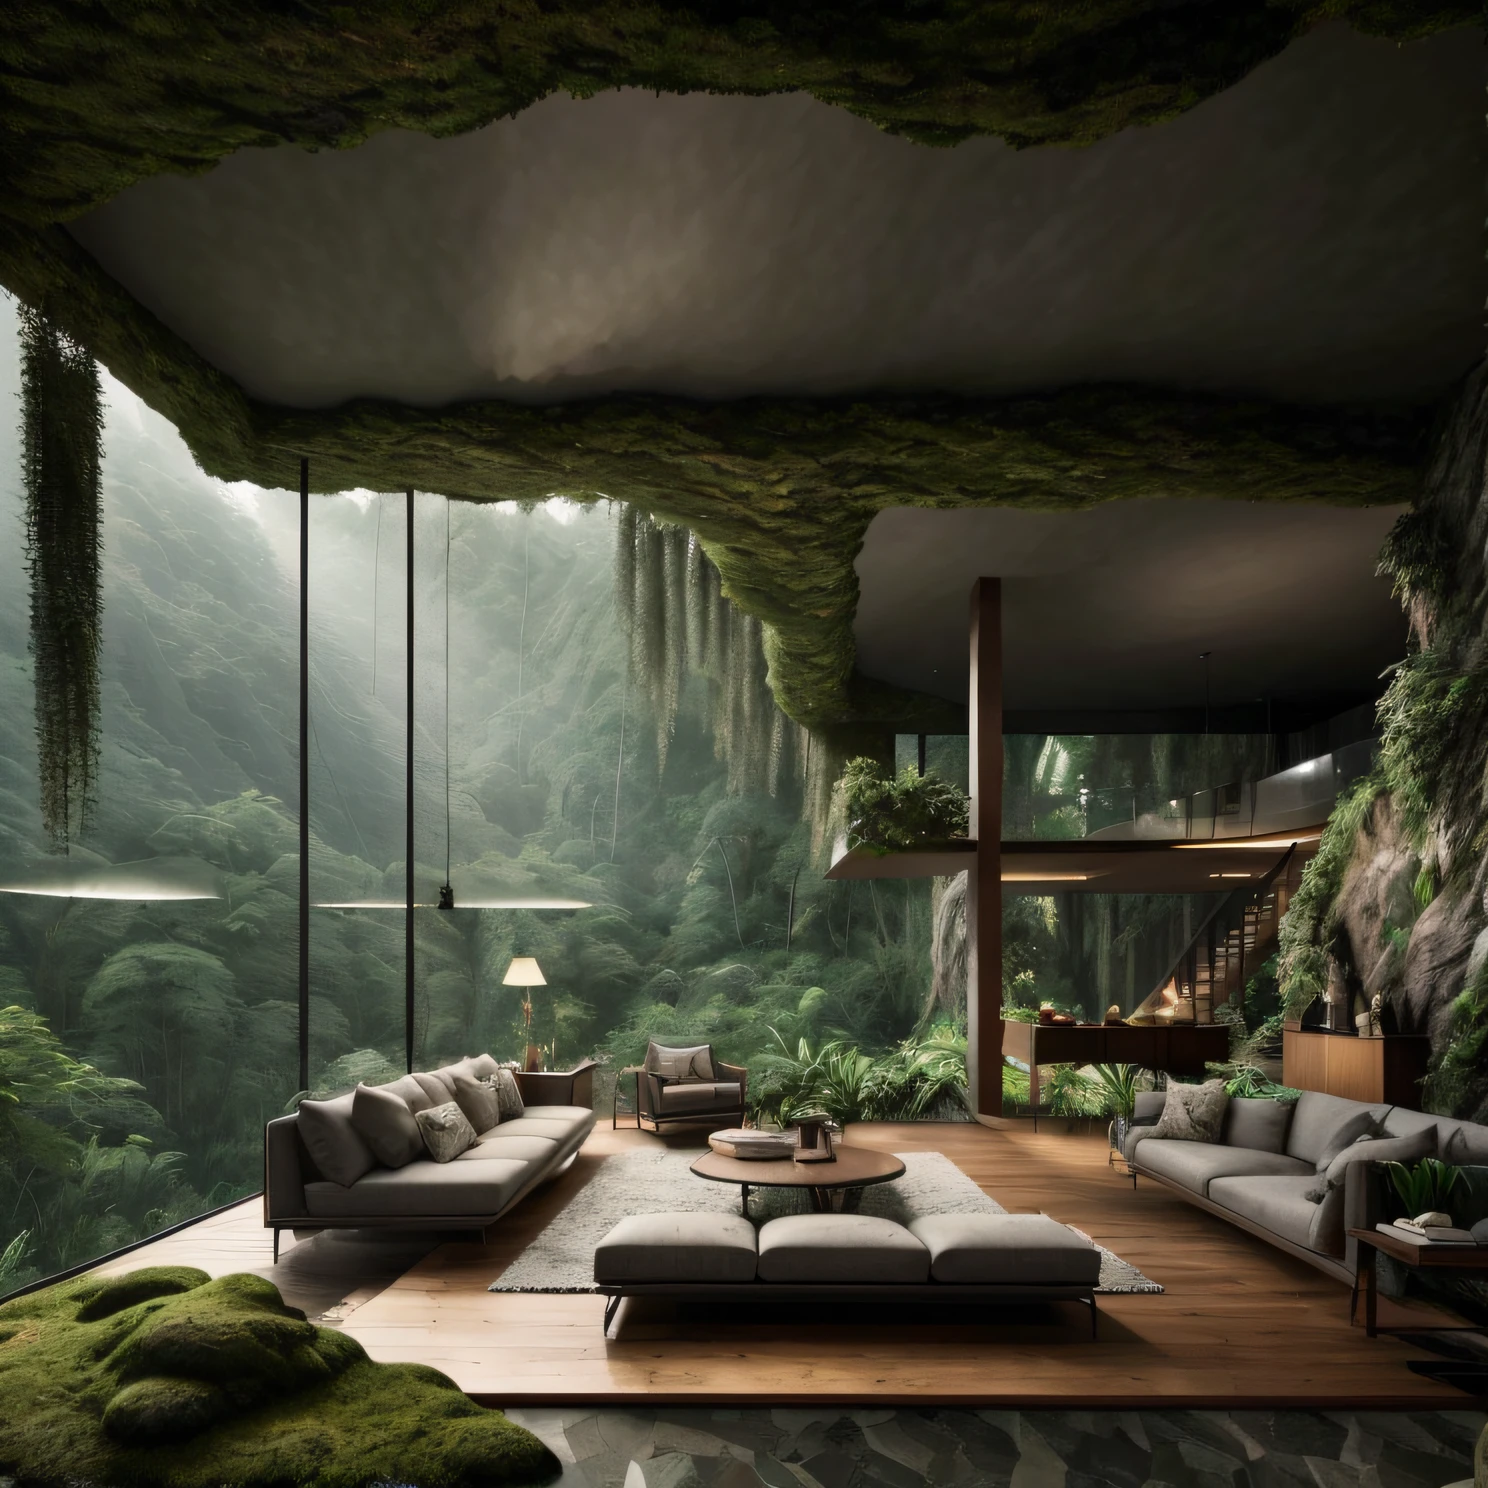 客厅里有一张大沙发和一张带灯的桌子, mountainous 丛林环境, 放松的环境, 美丽的风景渲染, 出色的 3D 渲染, 自然与建筑相遇, 逼真的幻想渲染, 神奇的氛围, 丛林环境, 森林里的房子, 融入山中, 现实建筑, 建在湖边的森林里, 渲染